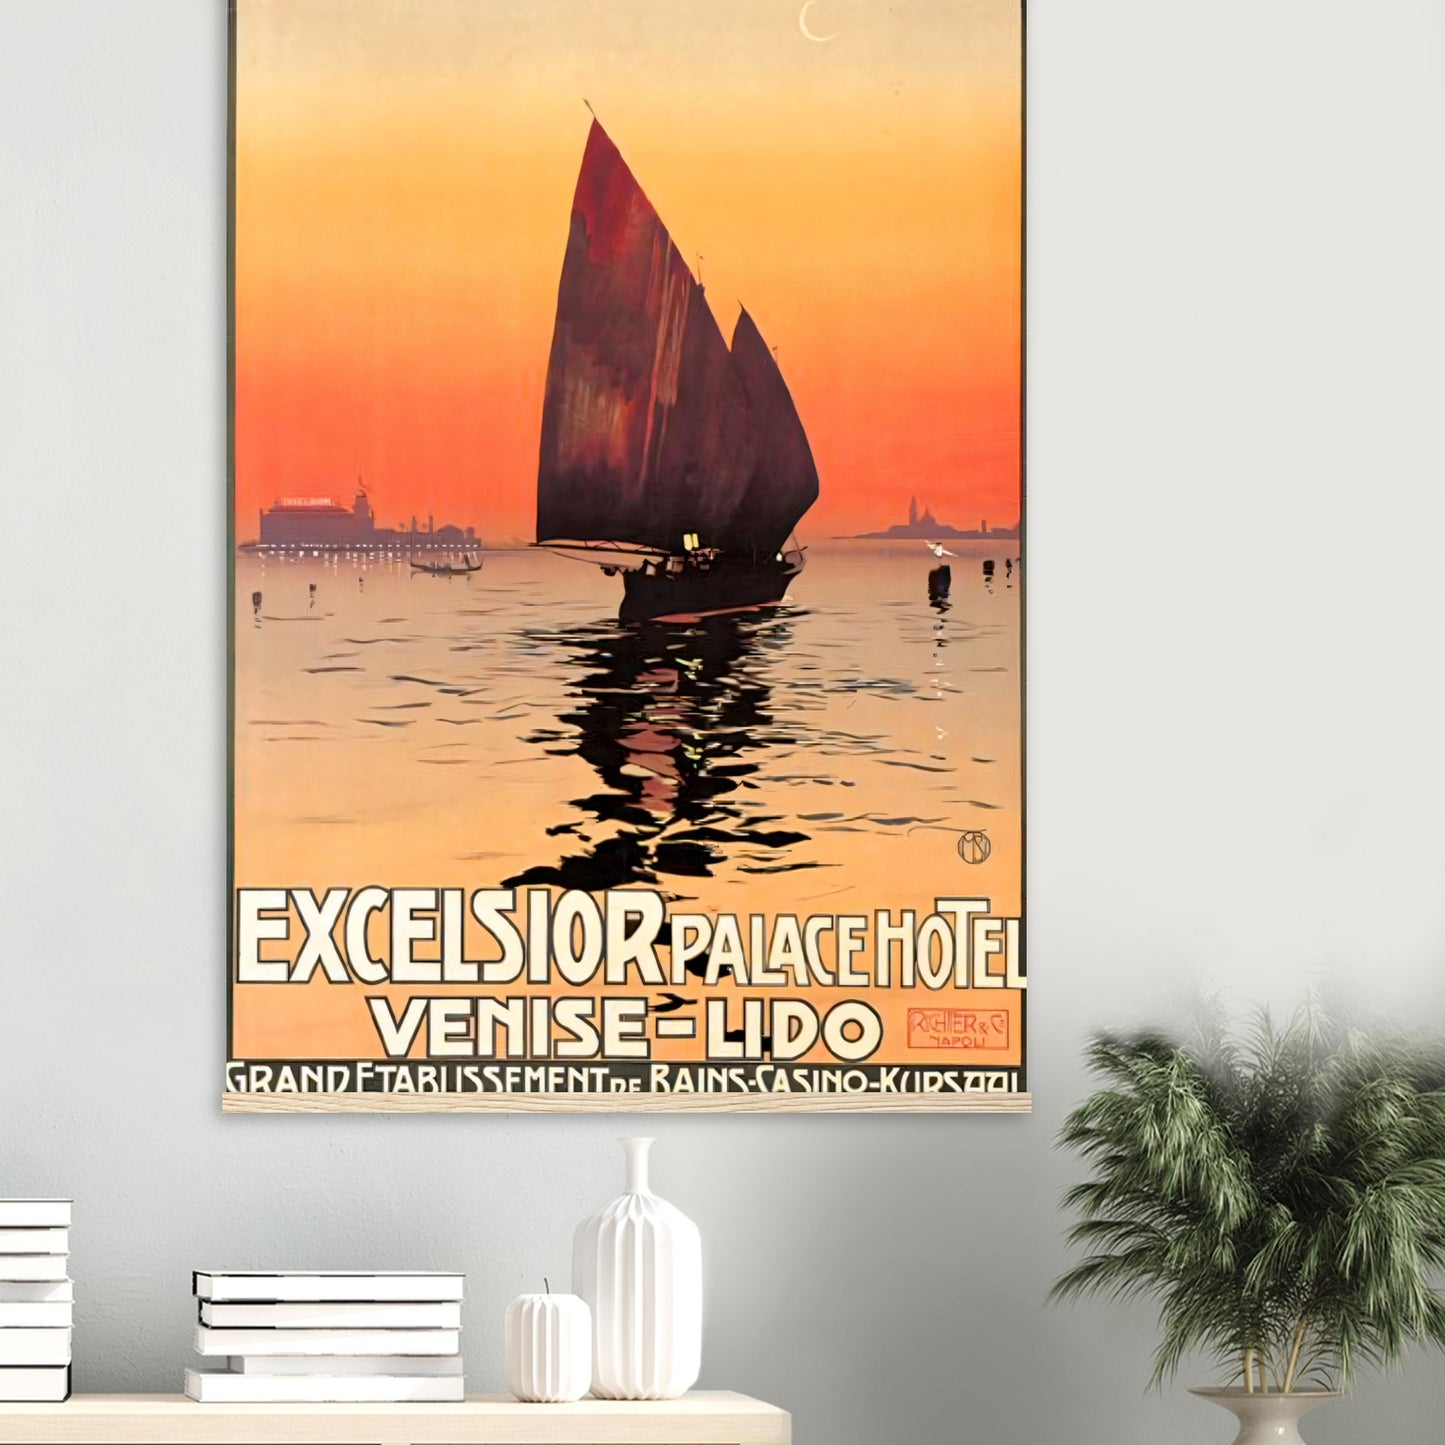 Venice Vintage Poster Reprint on premium Matte paper - Posterify